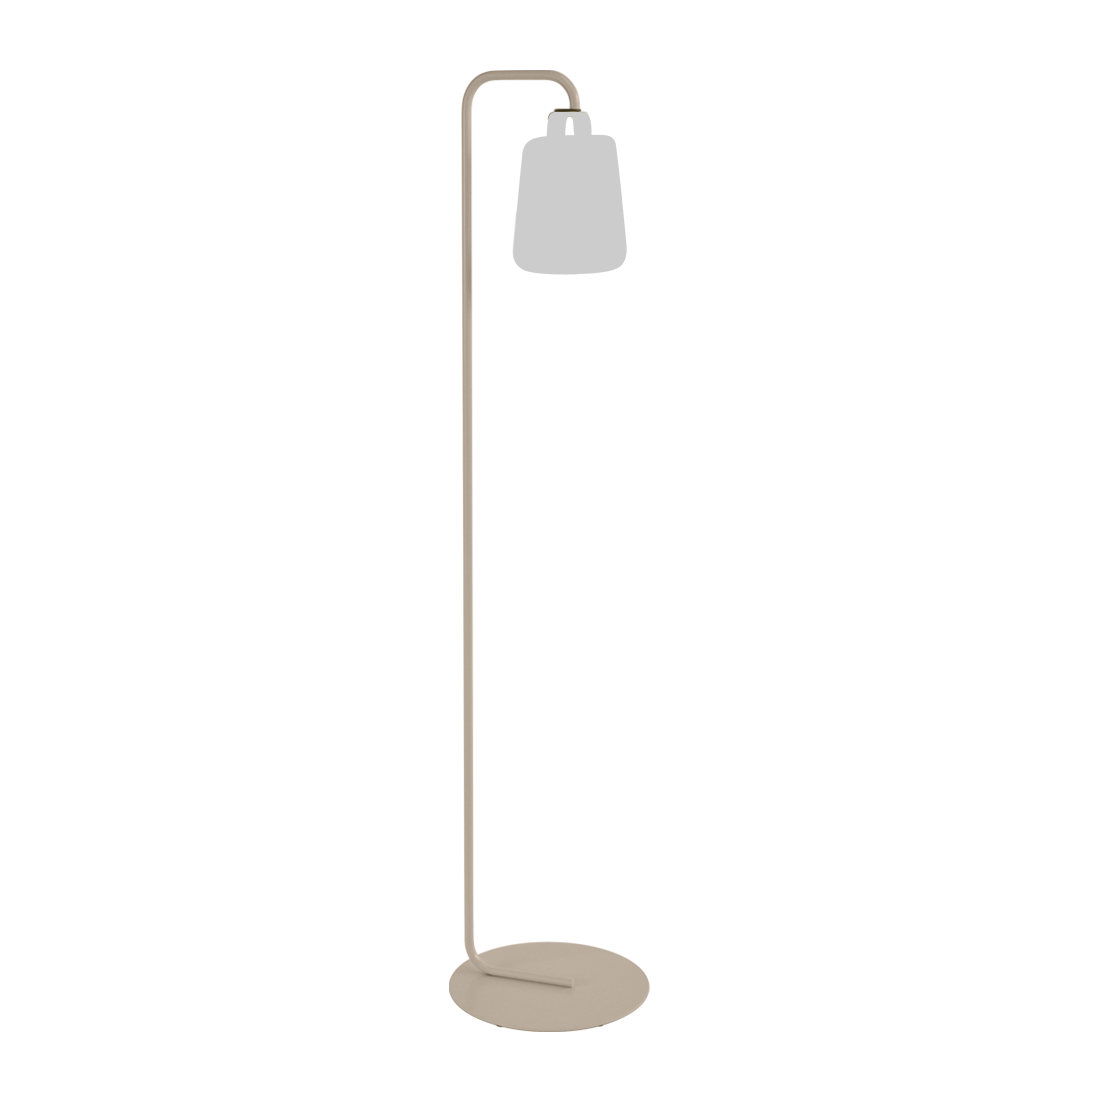 FERMOB - Balad pied simple - lampe vendu séparément -